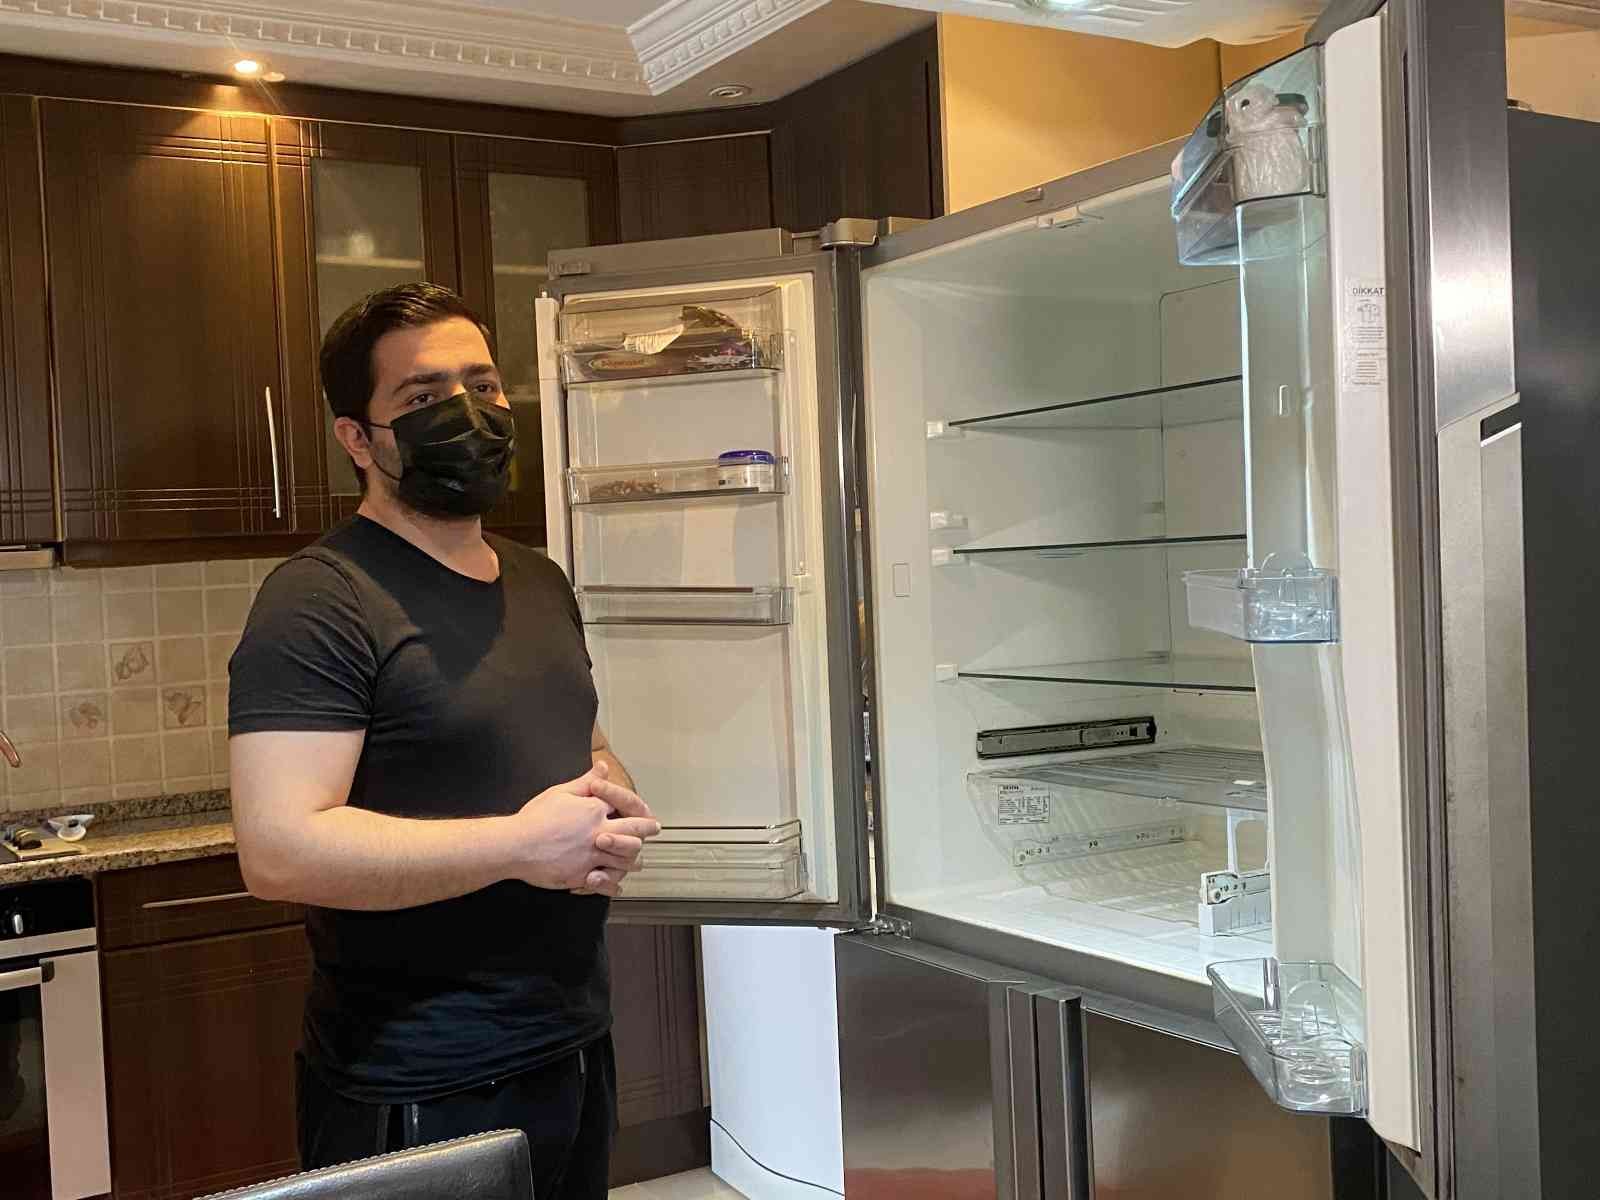 Maltepe’de buzdolabı bozulan Umut Polat, 30 bin lira değerindeki buzdolabını tamir etmek için internet üzerinden teknik servis çağırdı. İddiaya ...